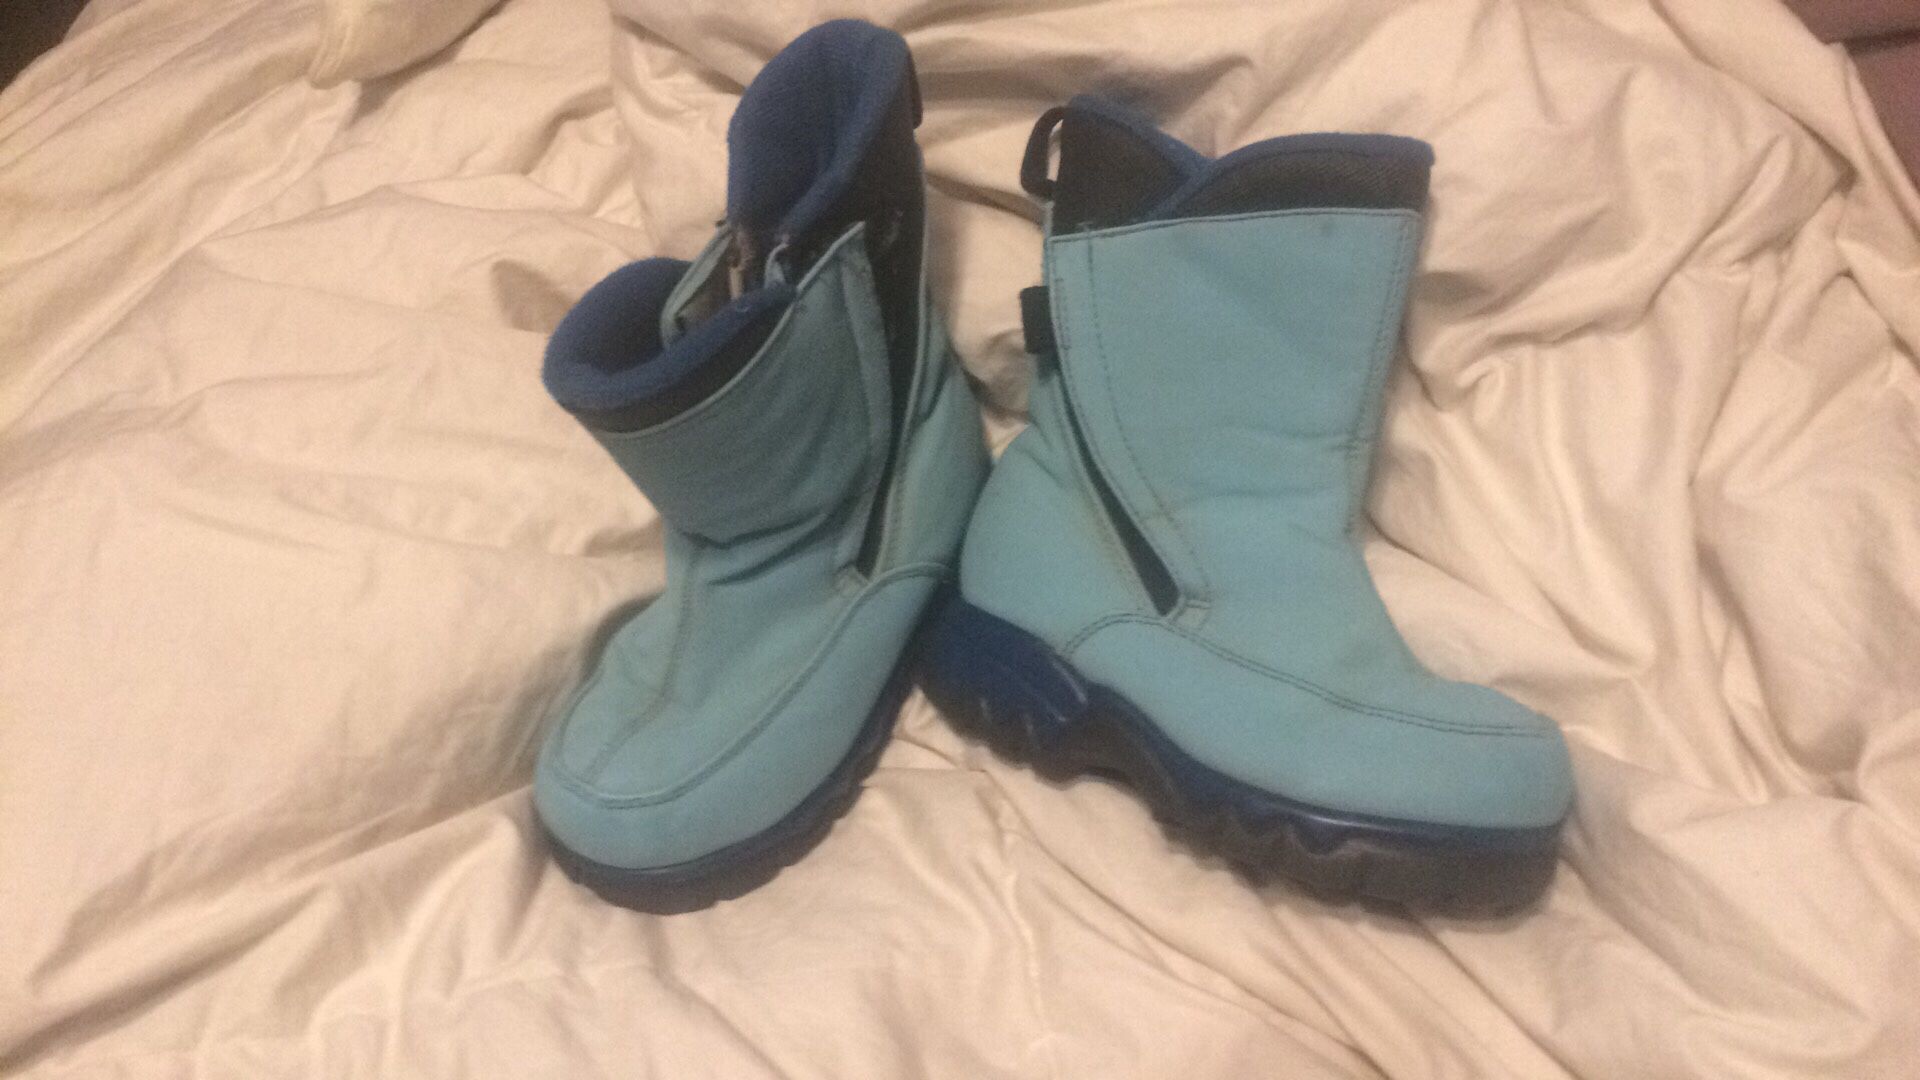 Kids snow boots pink sz 7 Blue 13...$5 each